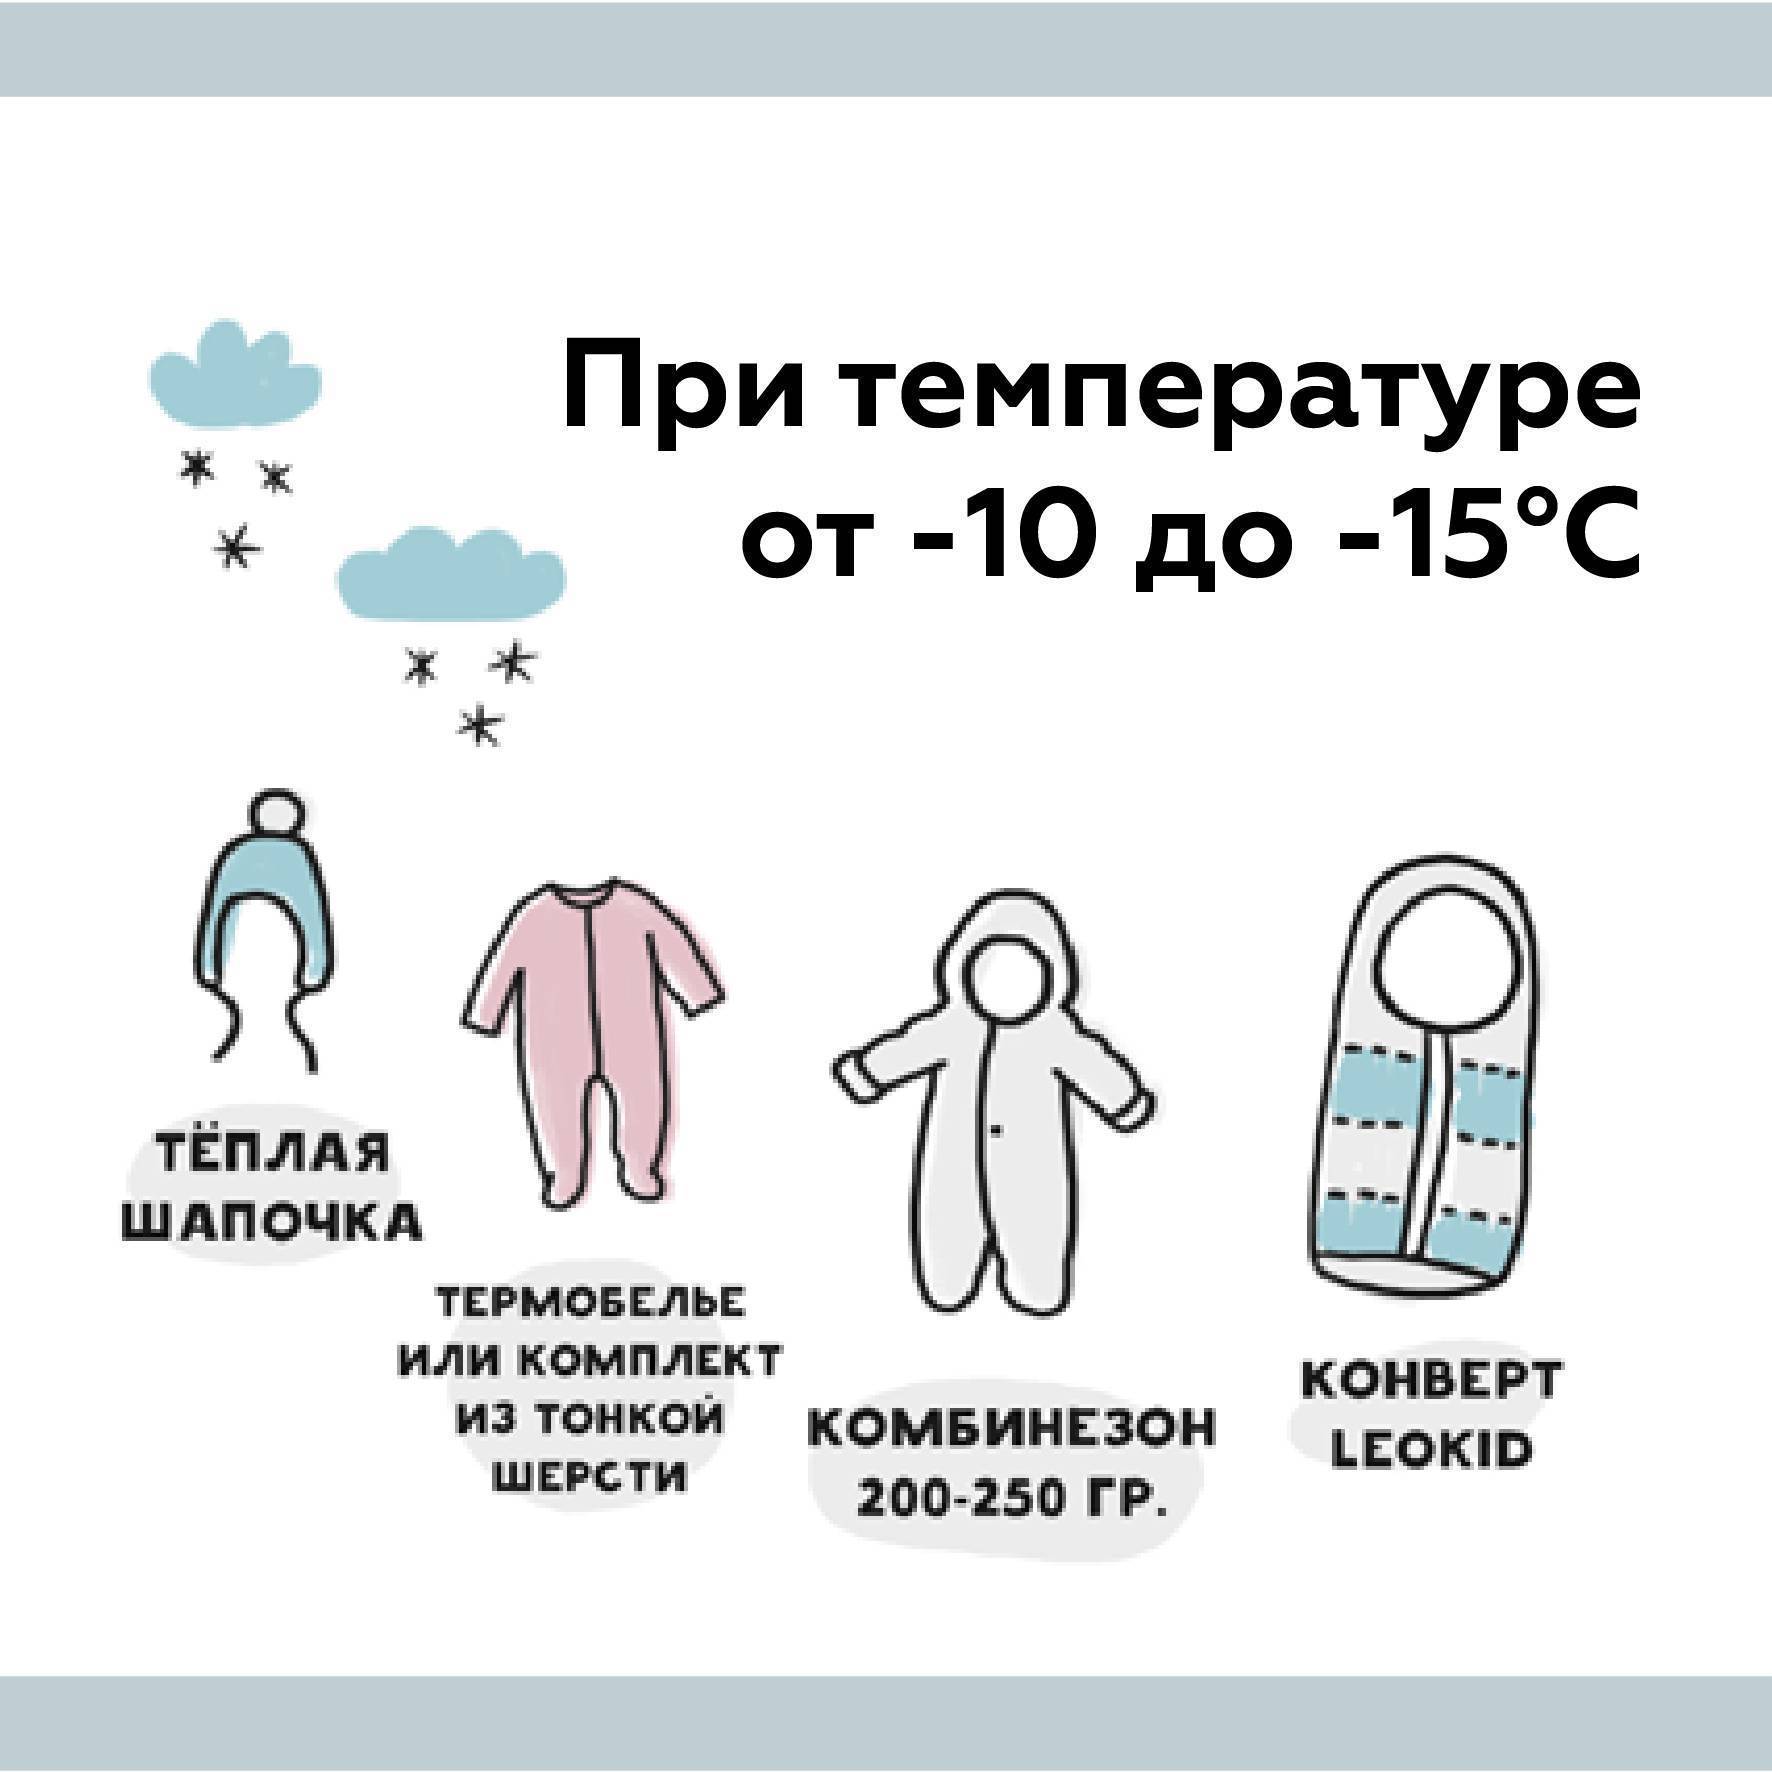 Как одеть ребенка по погоде — таблица на каждый возраст